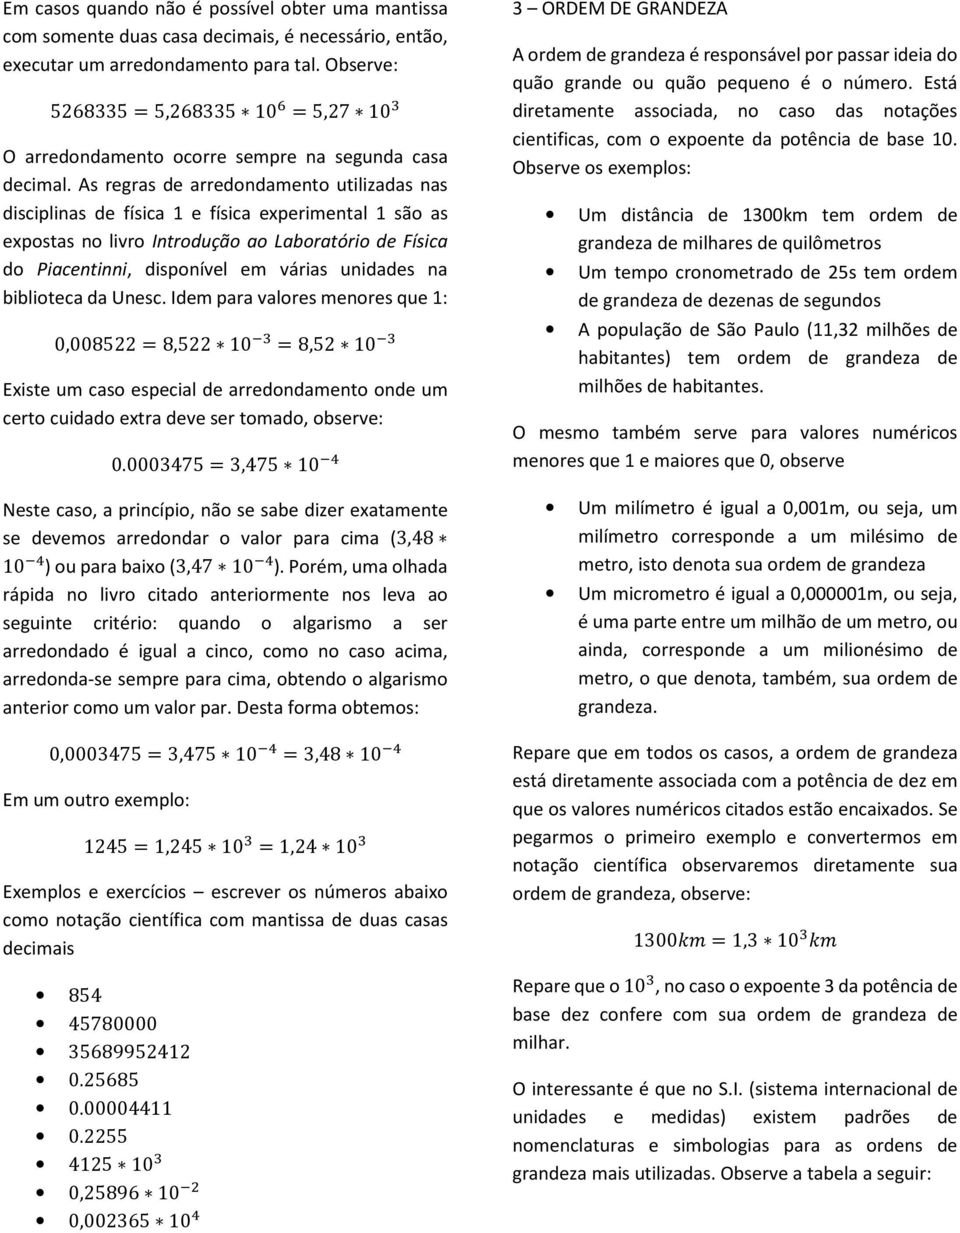 Notação Científica Notacao de Engenharia Exercícios, PDF, Sistema  internacional de unidades